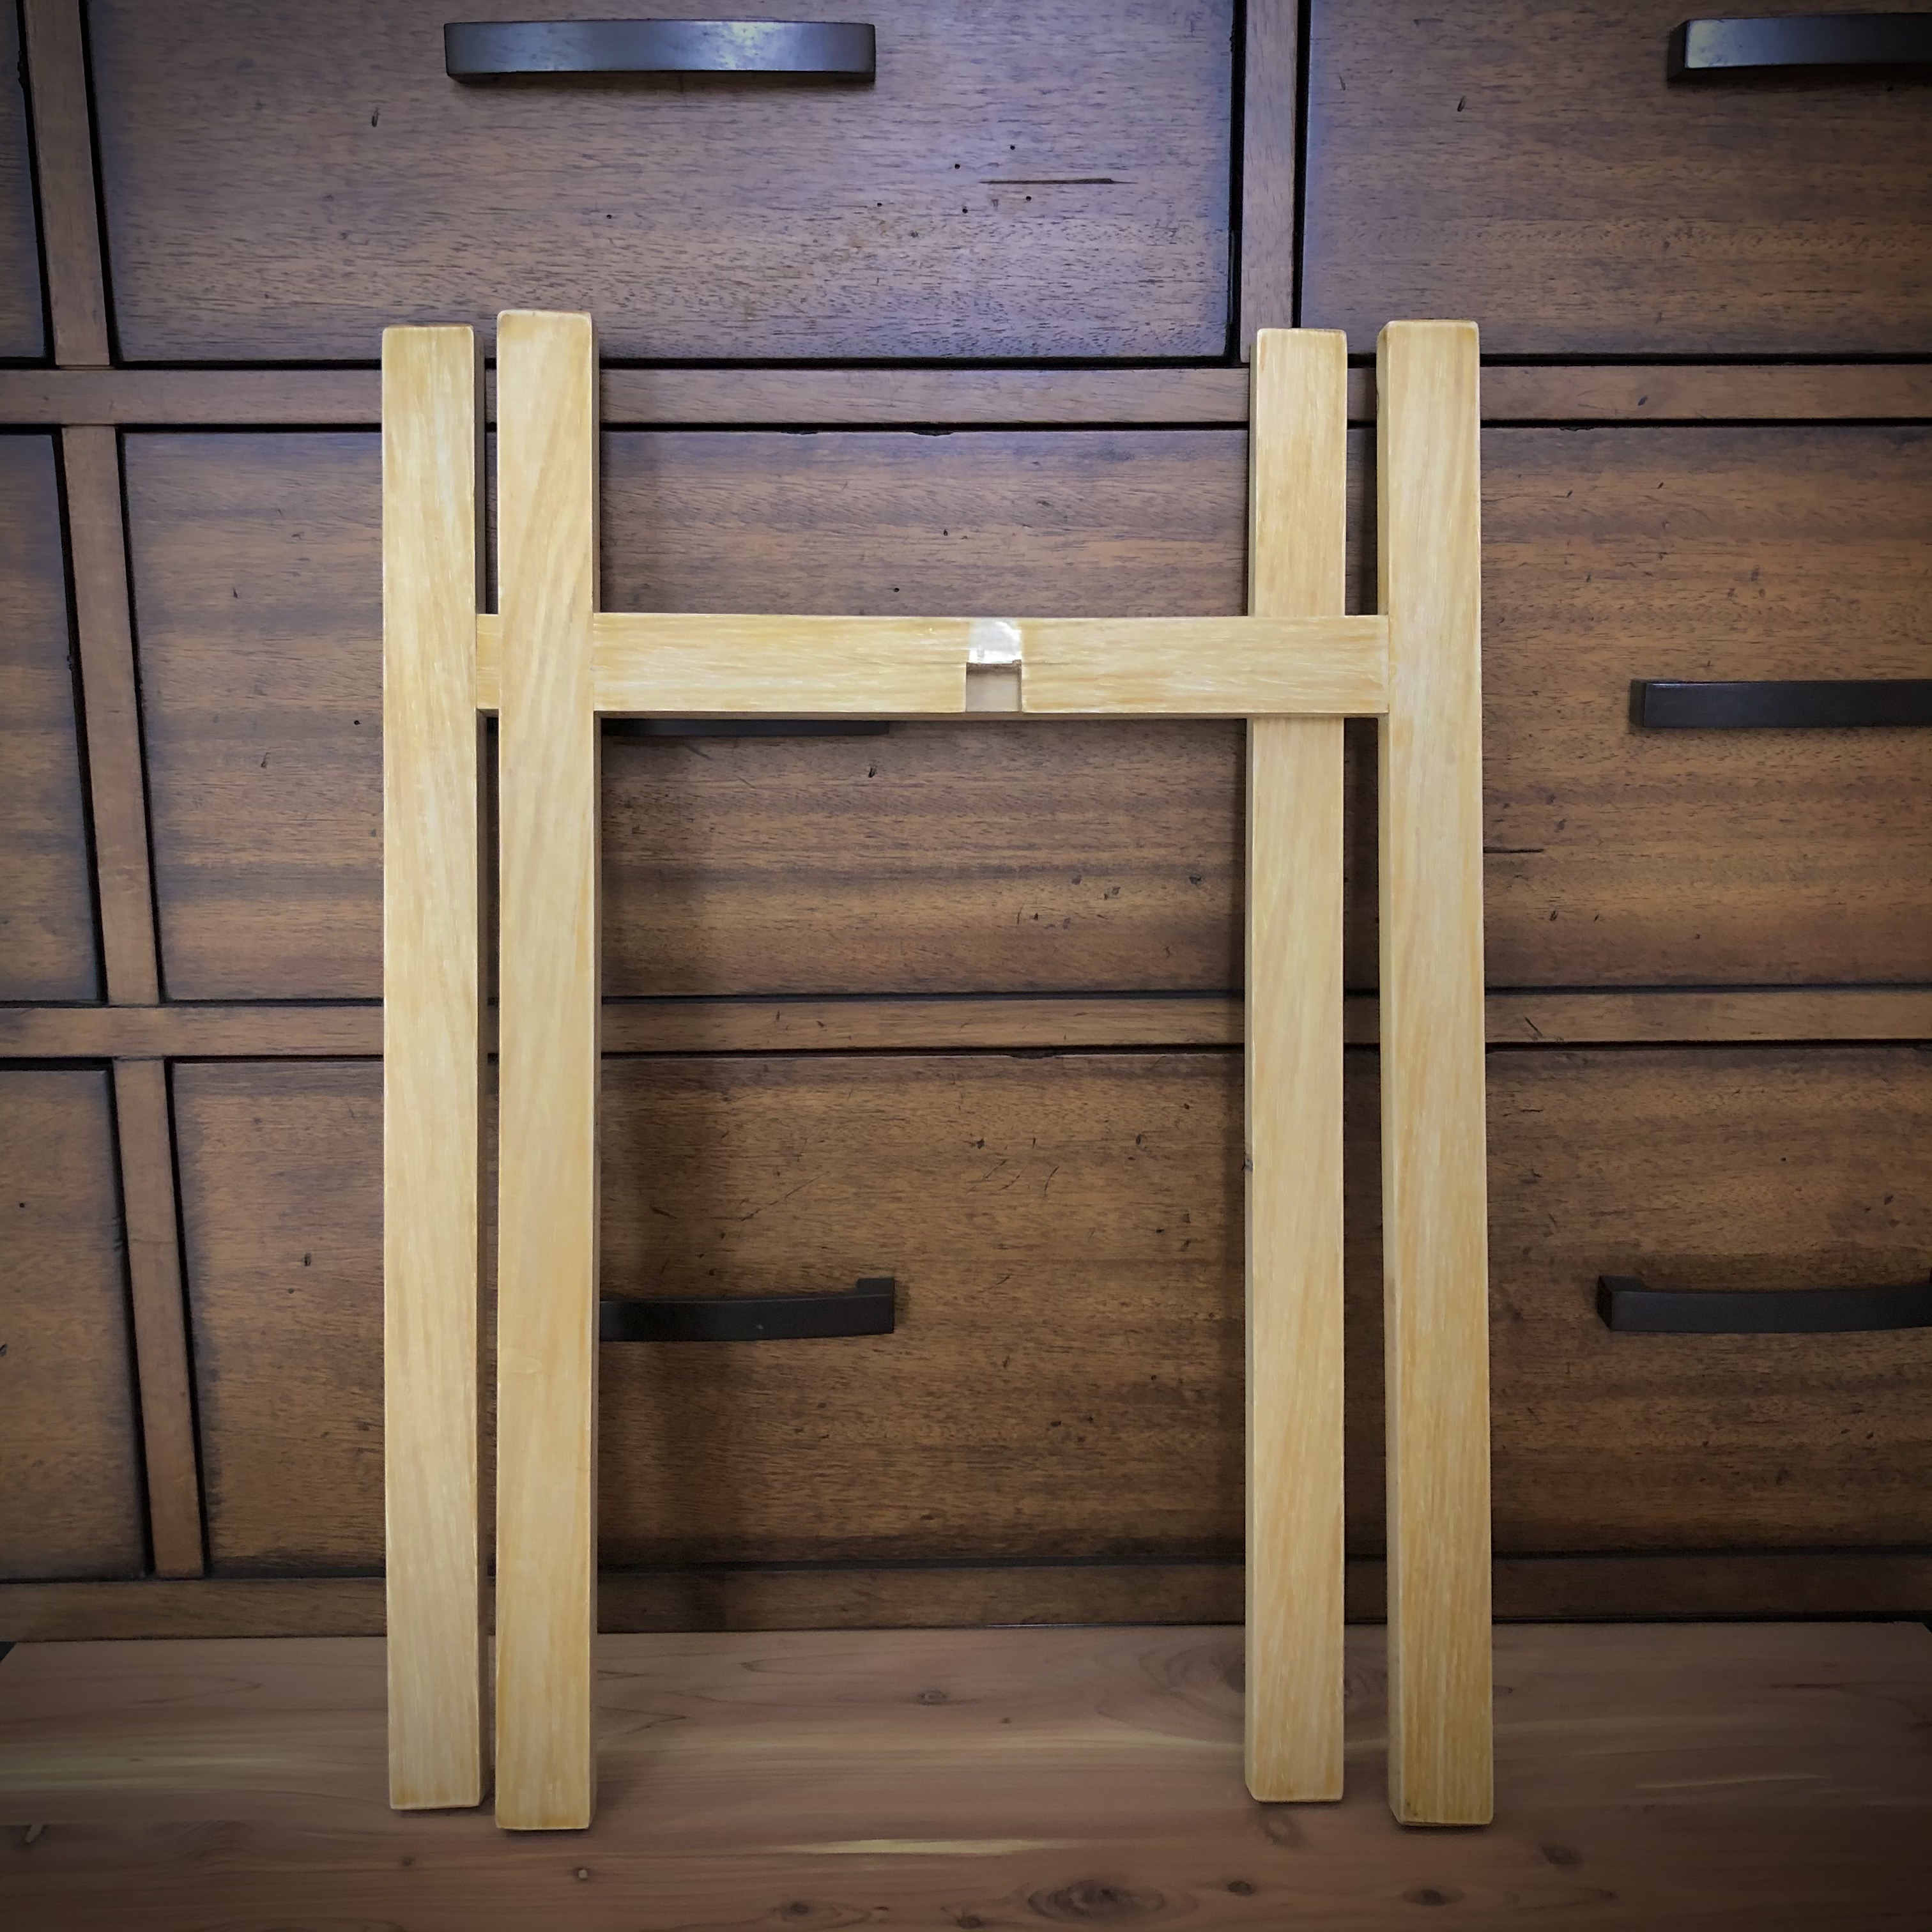 Kệ gỗ để chậu cây - Cho chậu đường kính 18 - 22 cm.